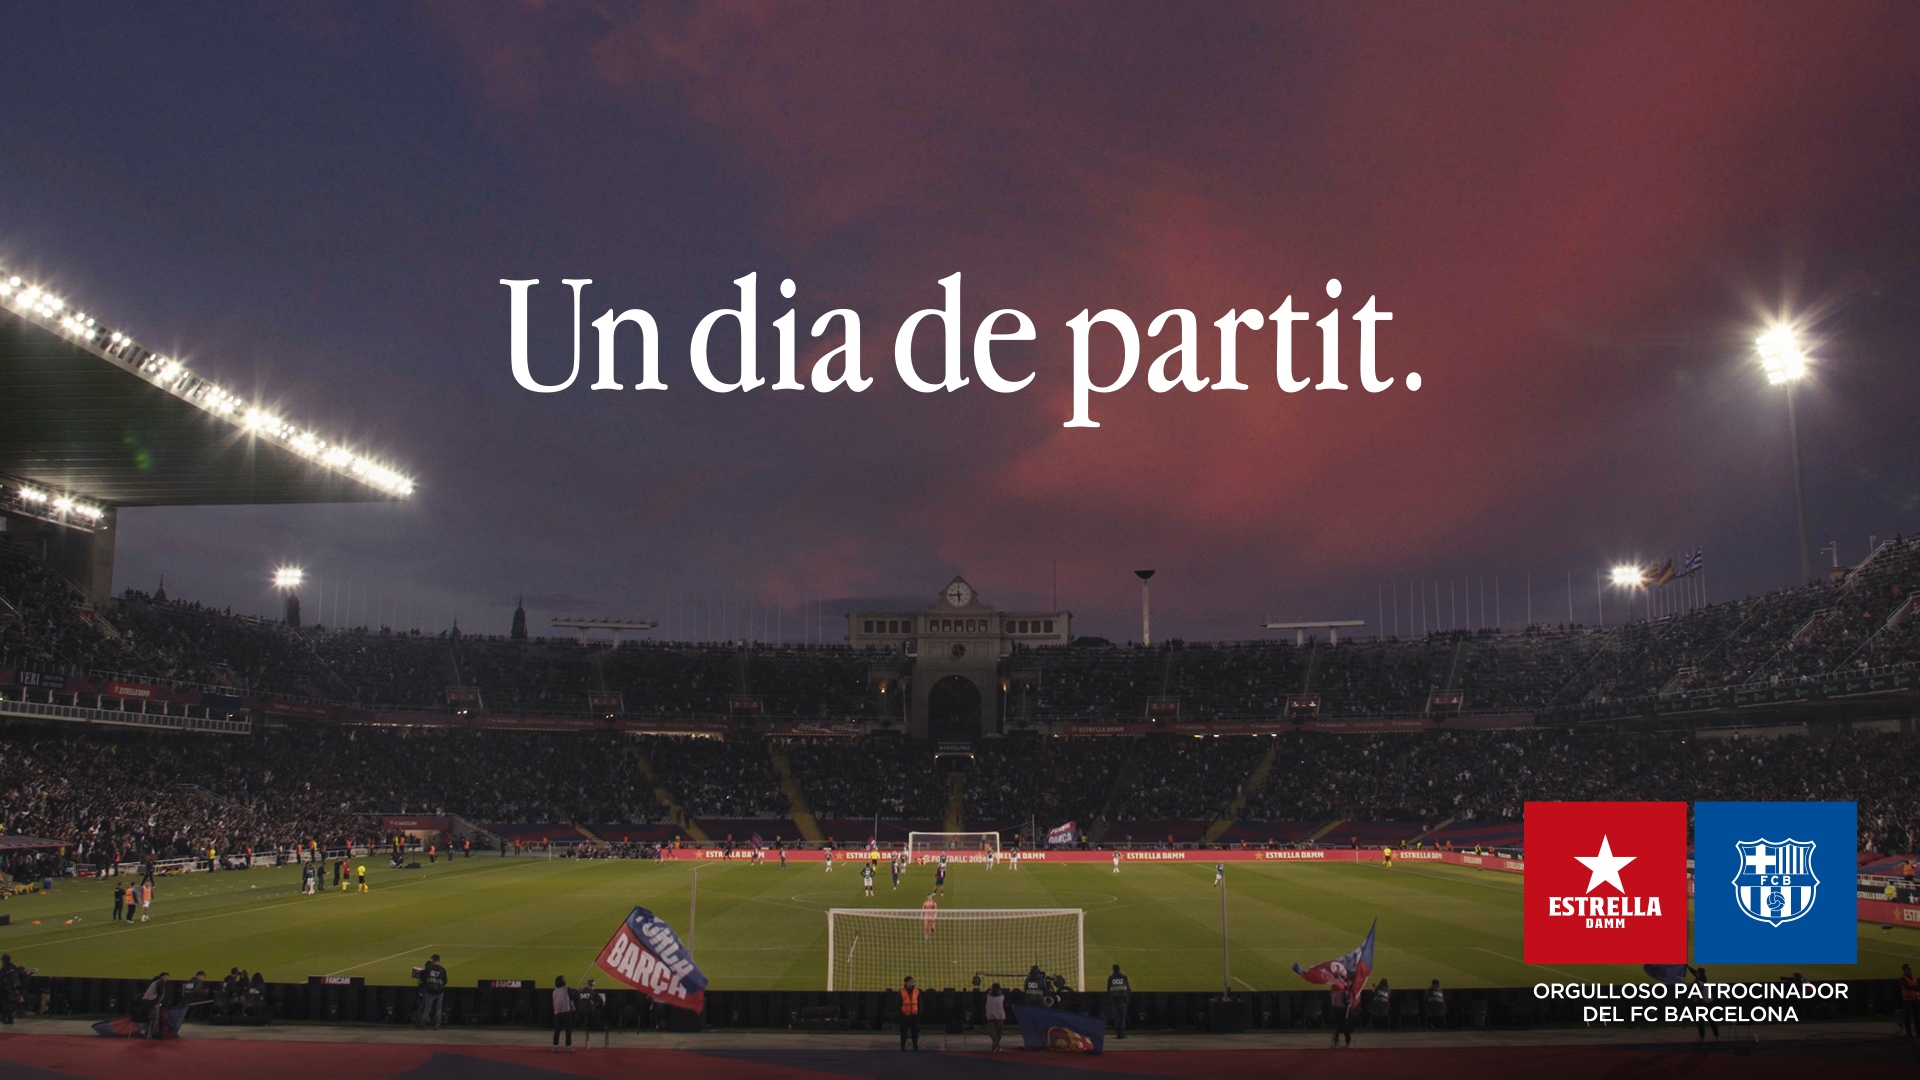 El Barça continua renovant patrocinadors: Estrella Damm, blaugrana cinc anys més